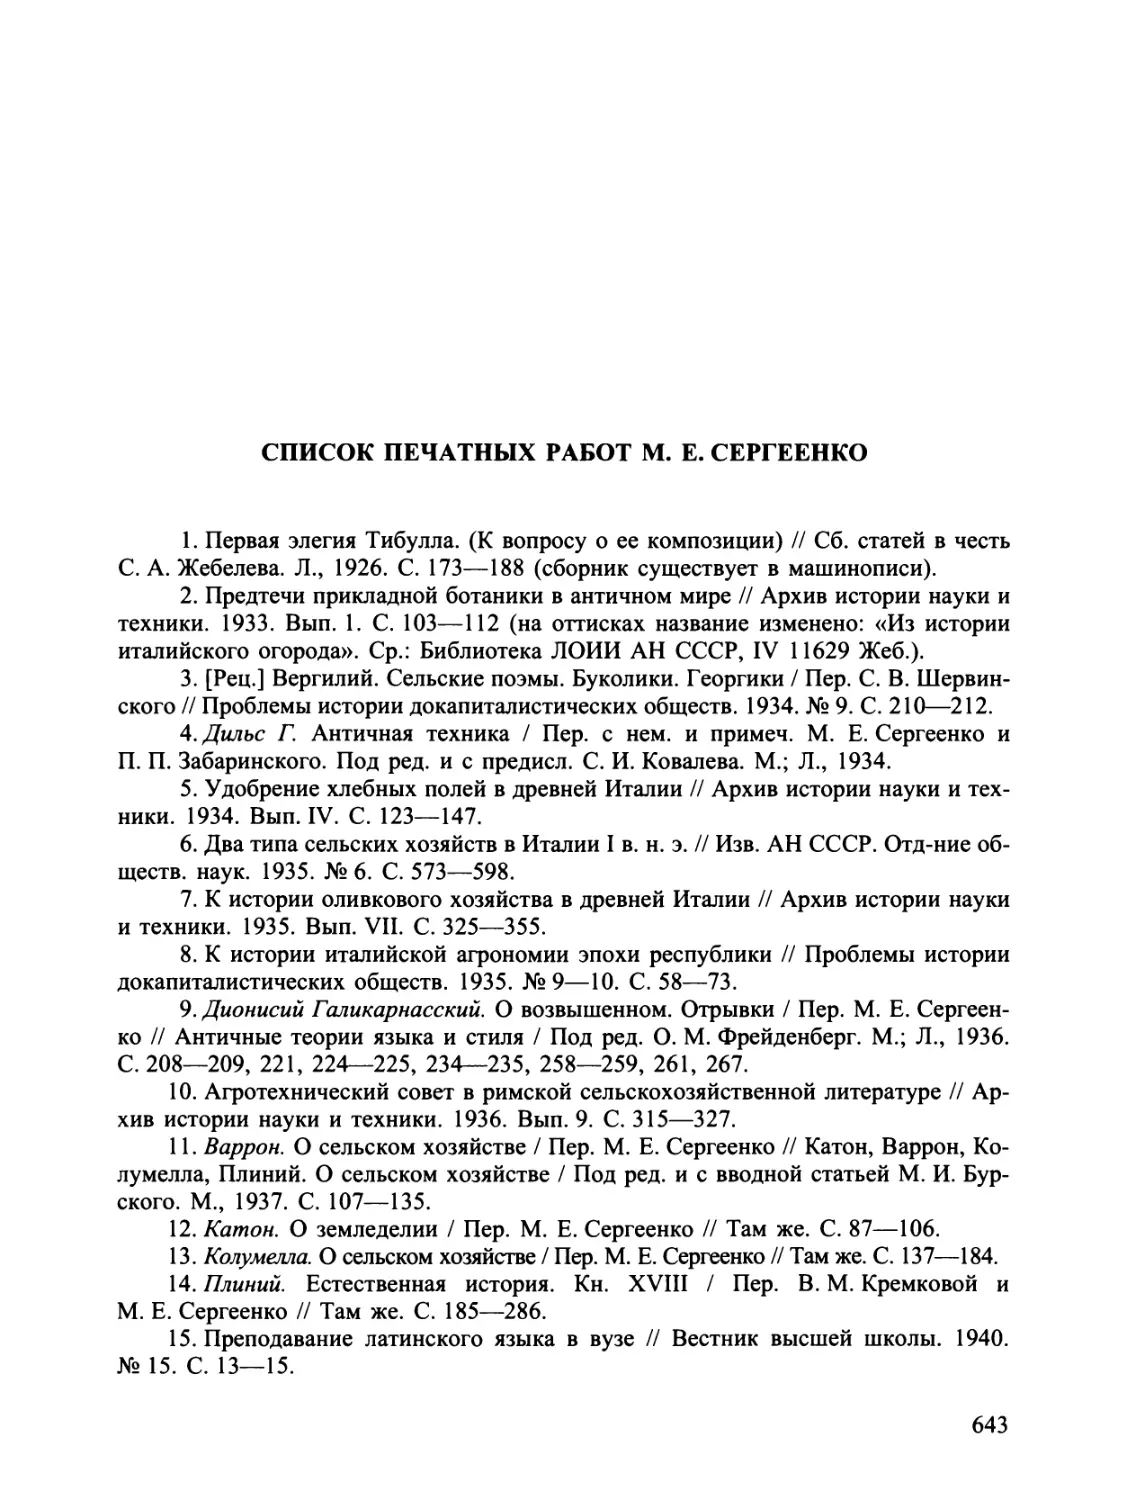 Список печатных работ М. Е. Сергеенко